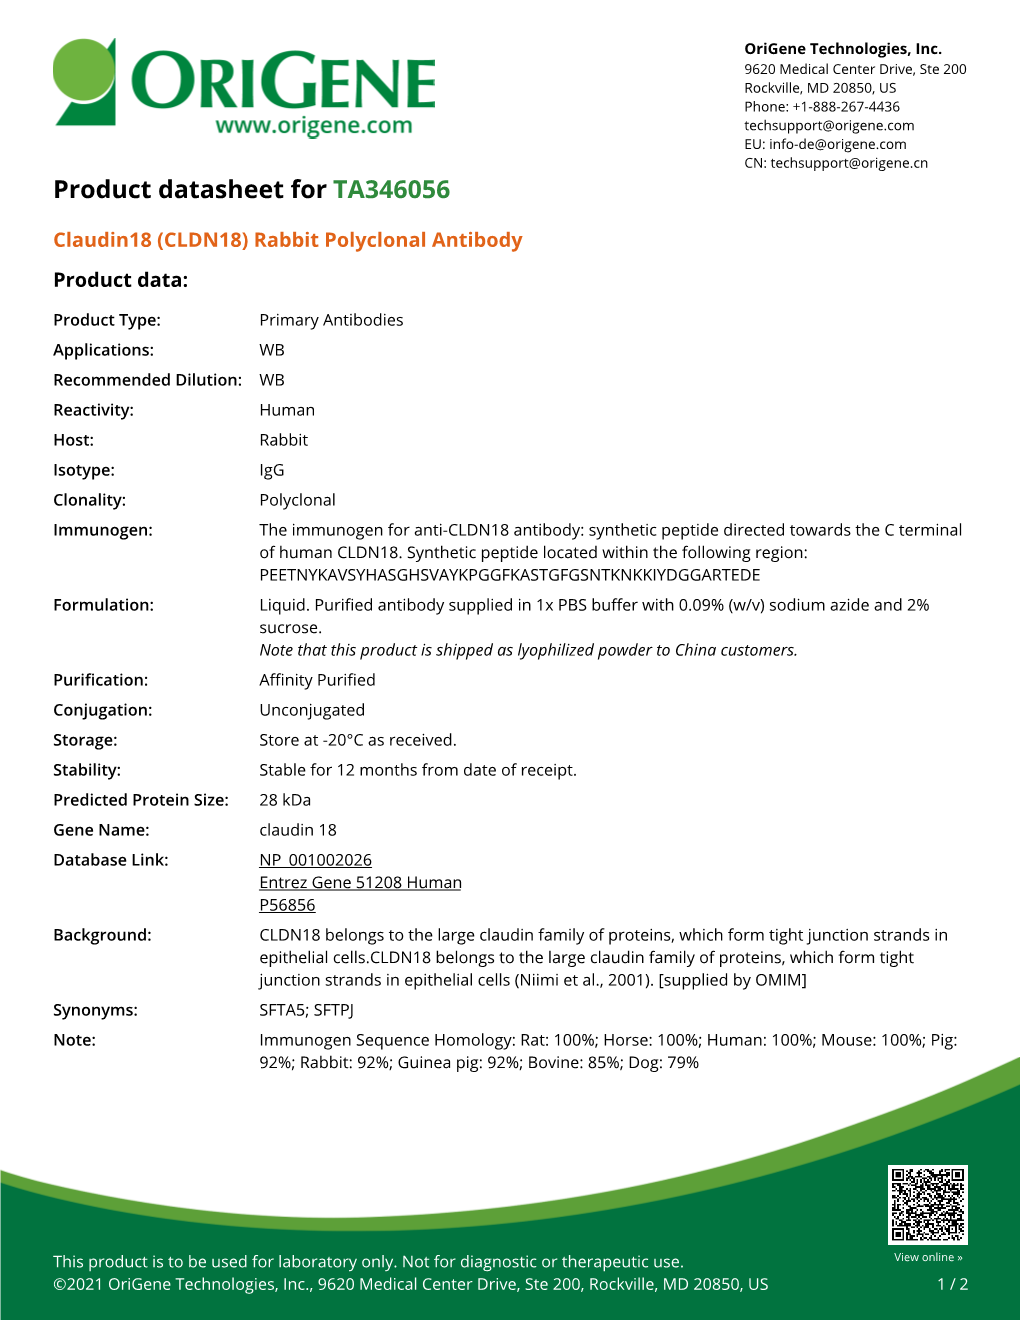 Claudin18 (CLDN18) Rabbit Polyclonal Antibody Product Data